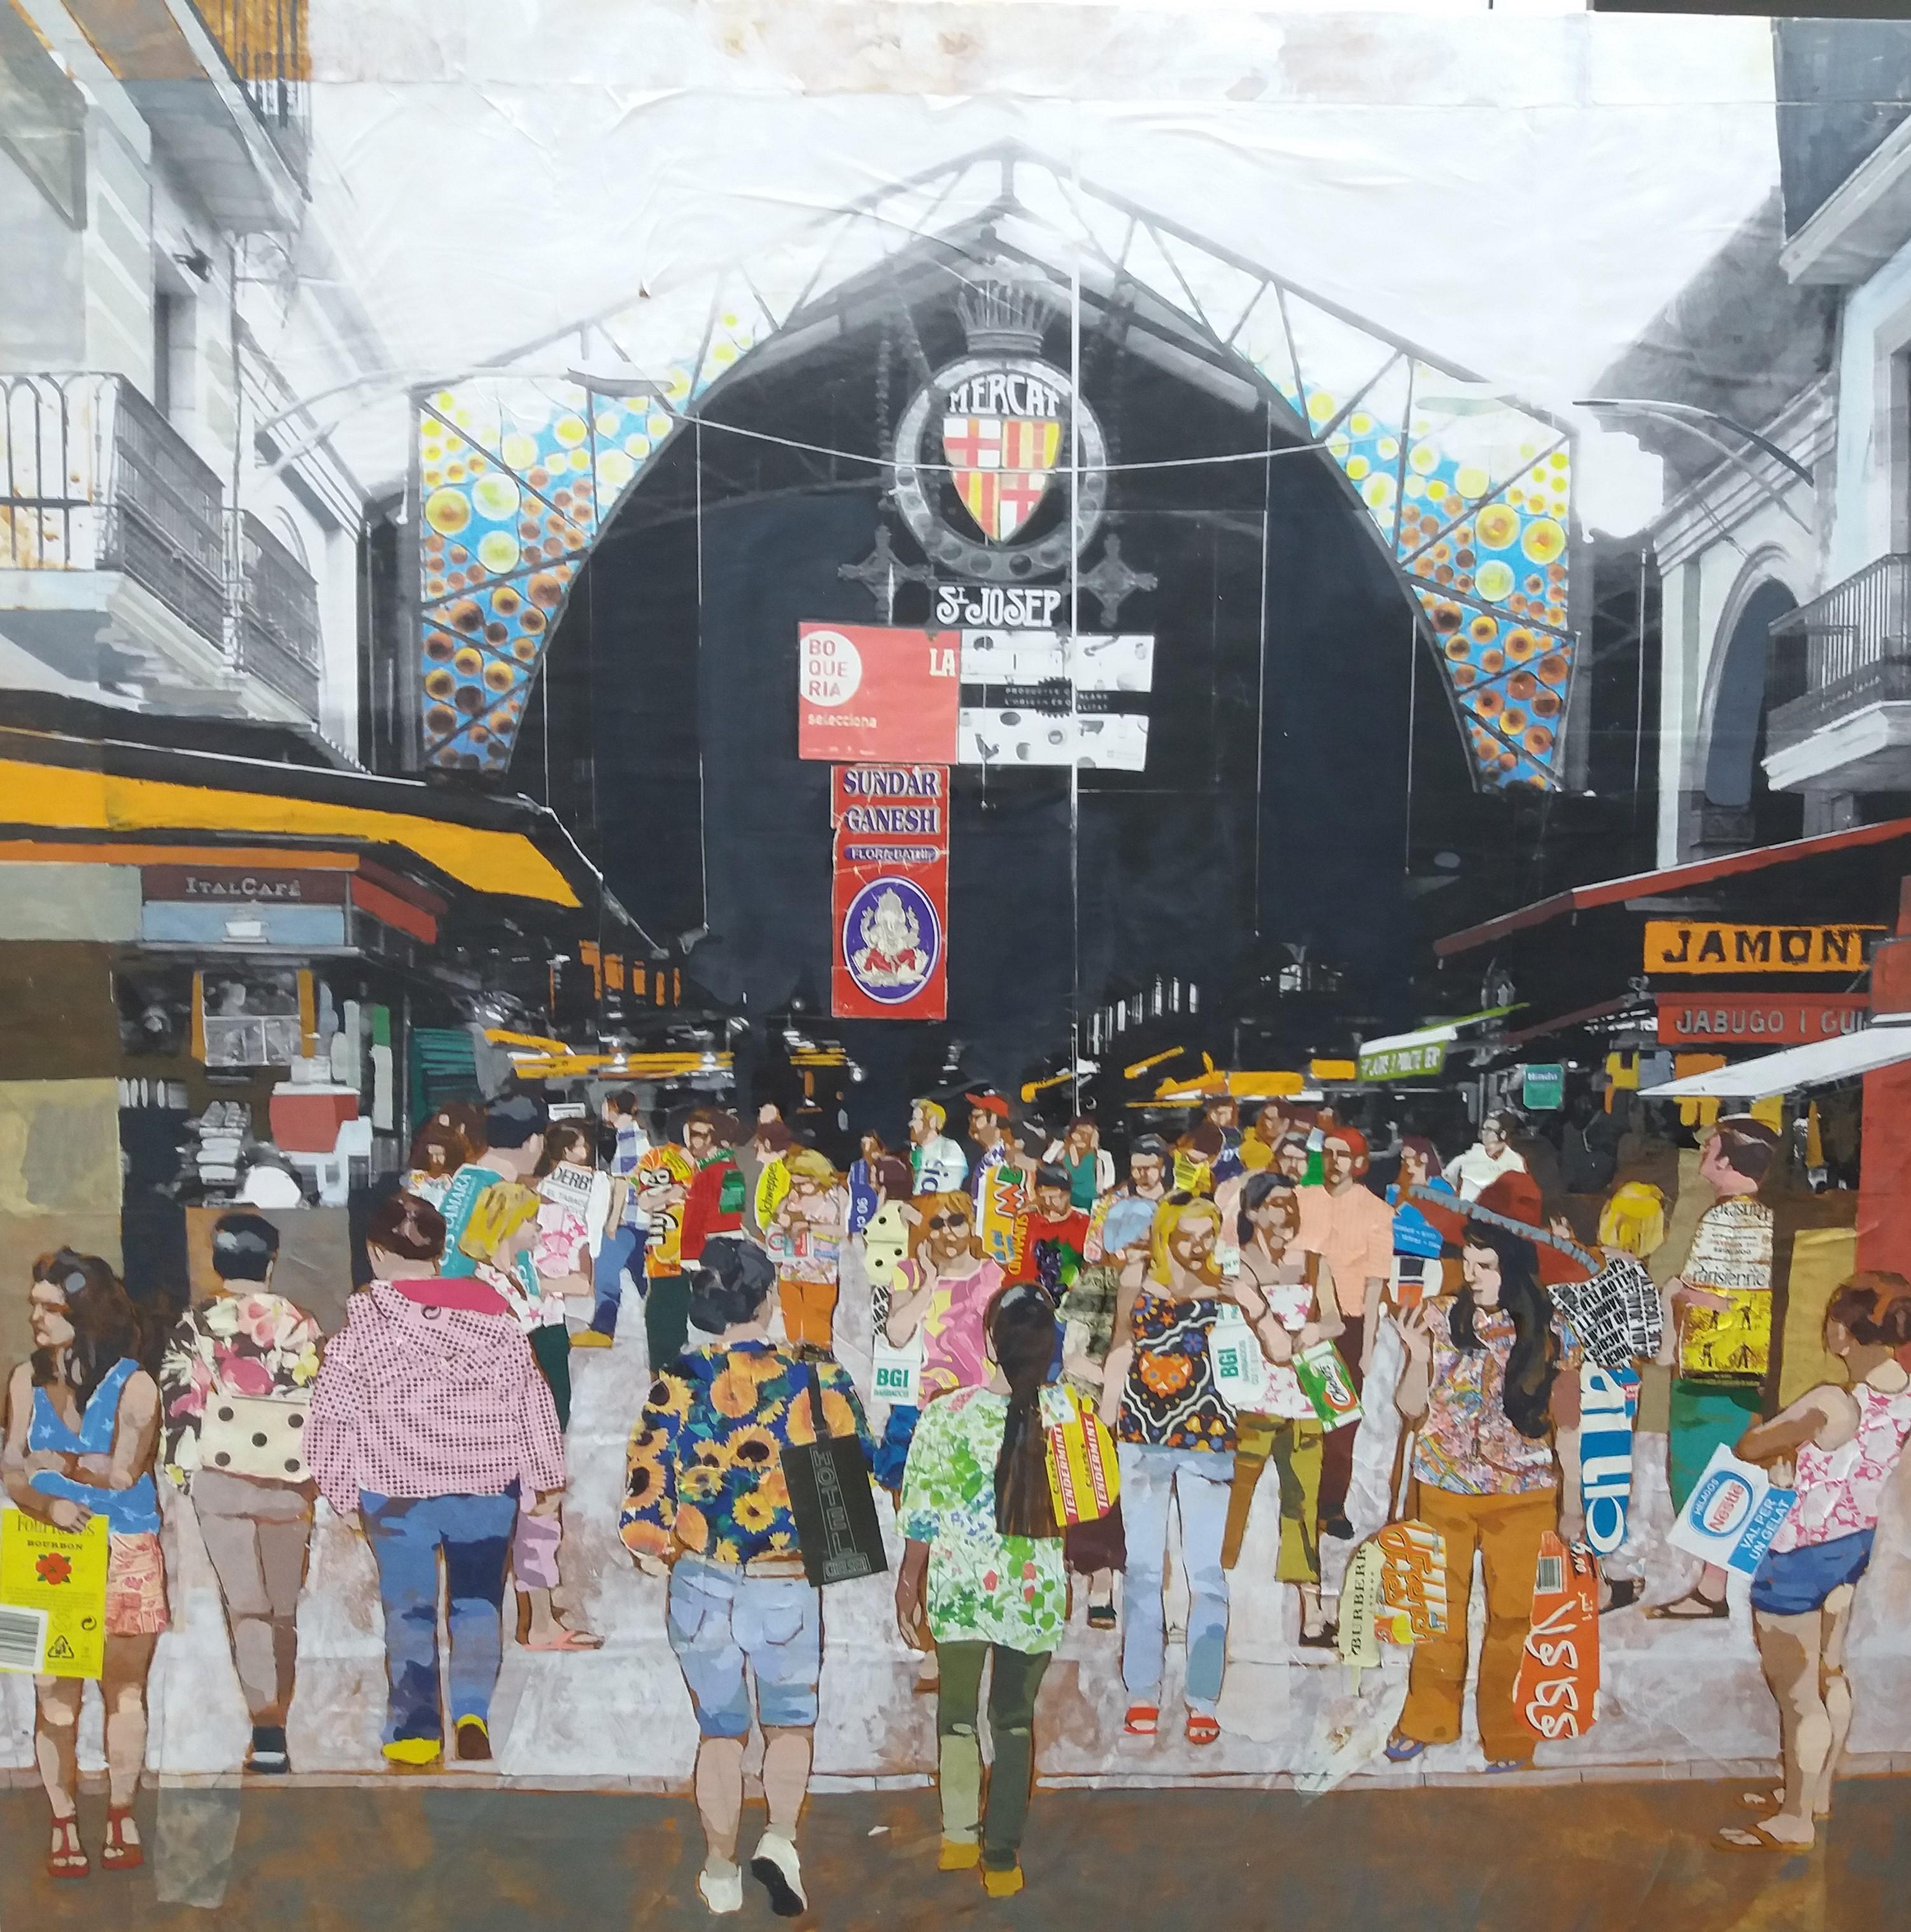  Miguel Olivares  Big  Square. Collage original mixed media painting - Painting by MIGUEL OLIVARES